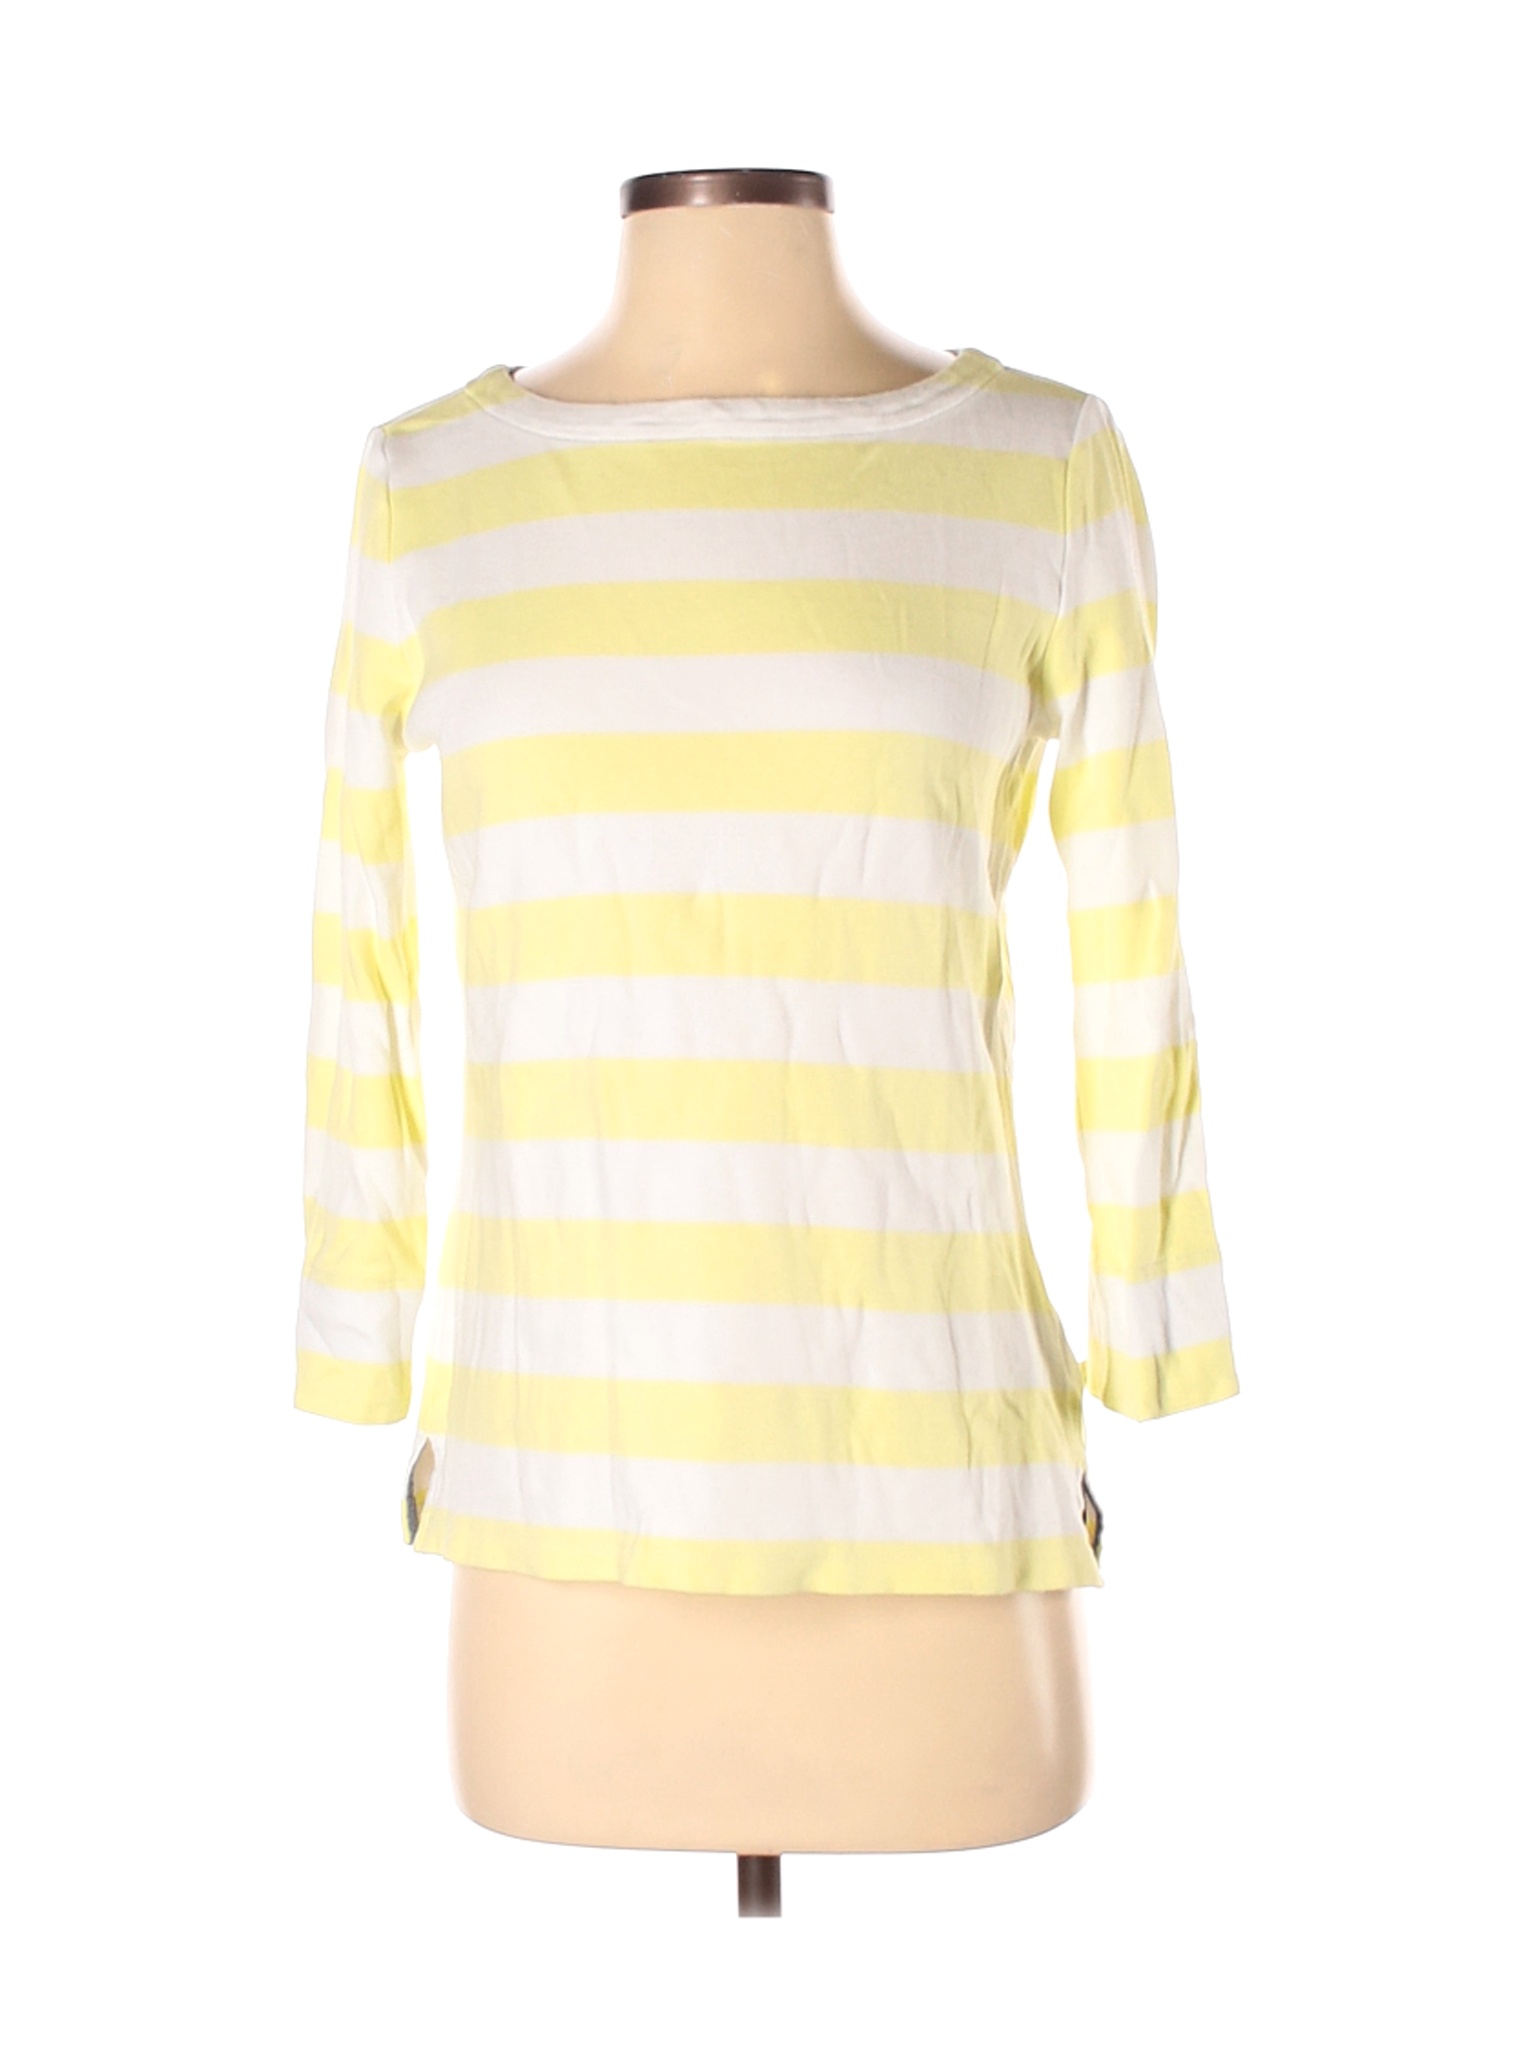 Nautica Women Yellow 3/4 Sleeve T-Shirt S | eBay